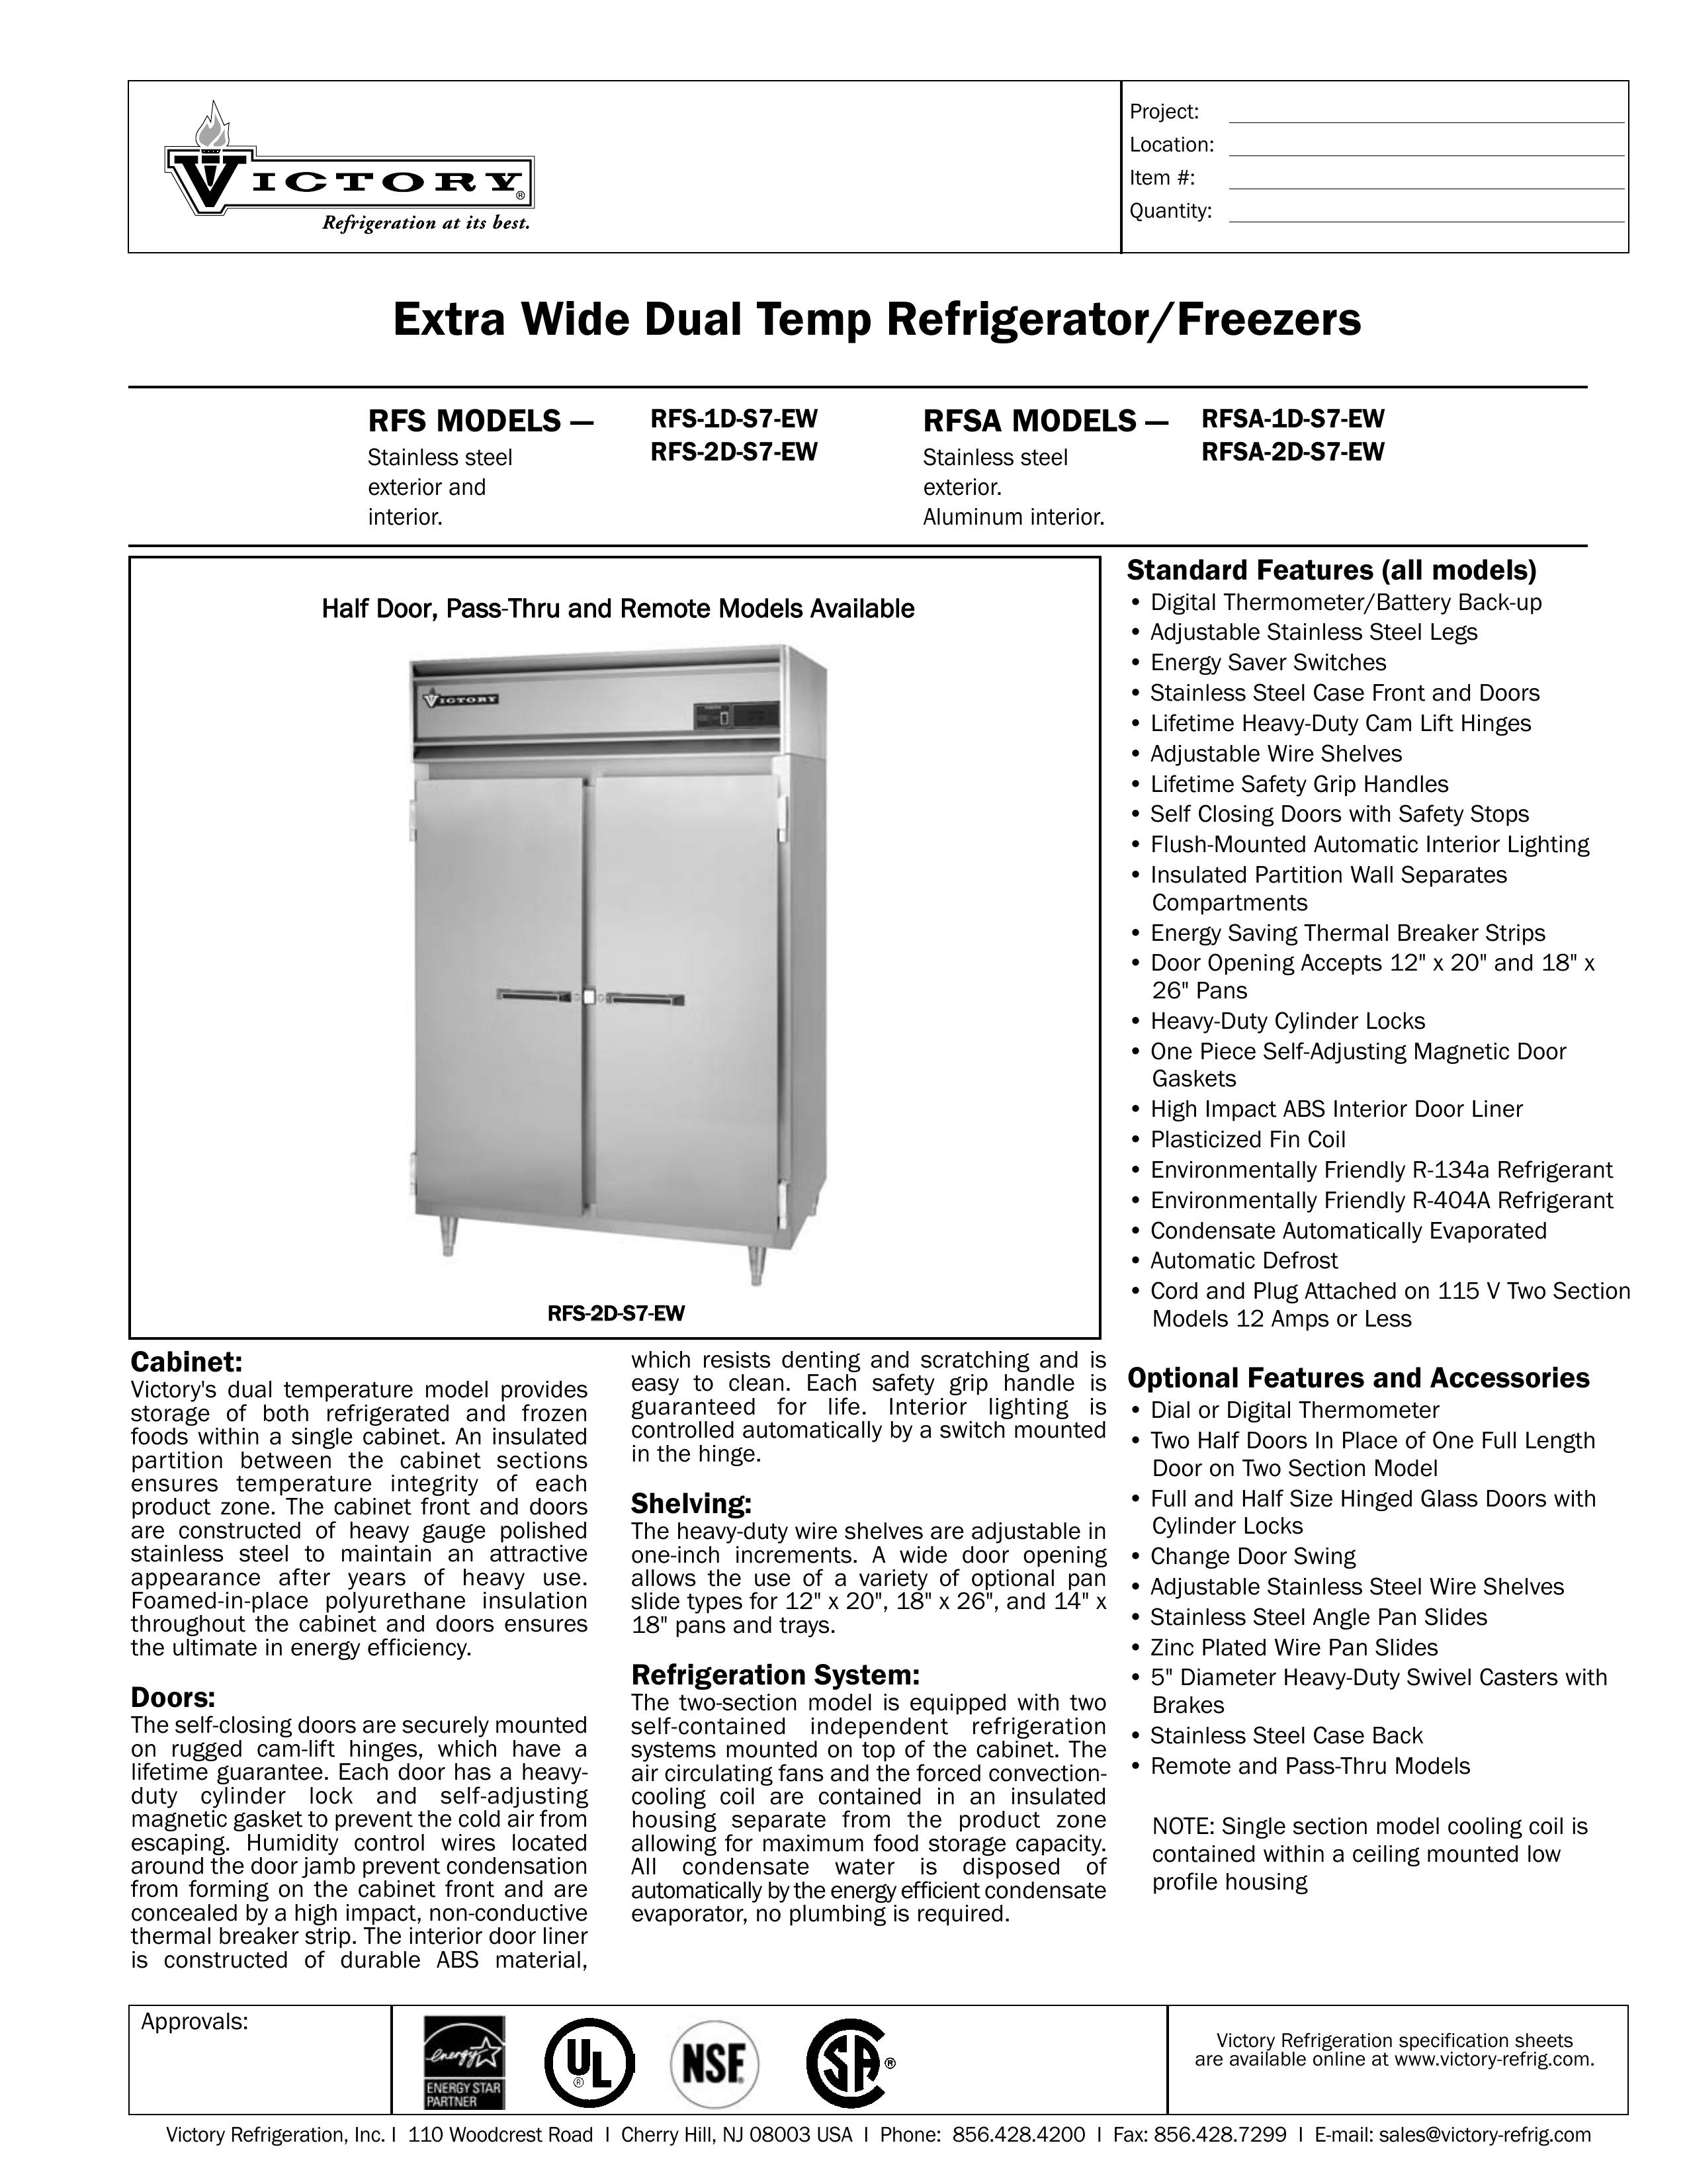 Victory Refrigeration RFS-2D-S7-EW Refrigerator User Manual